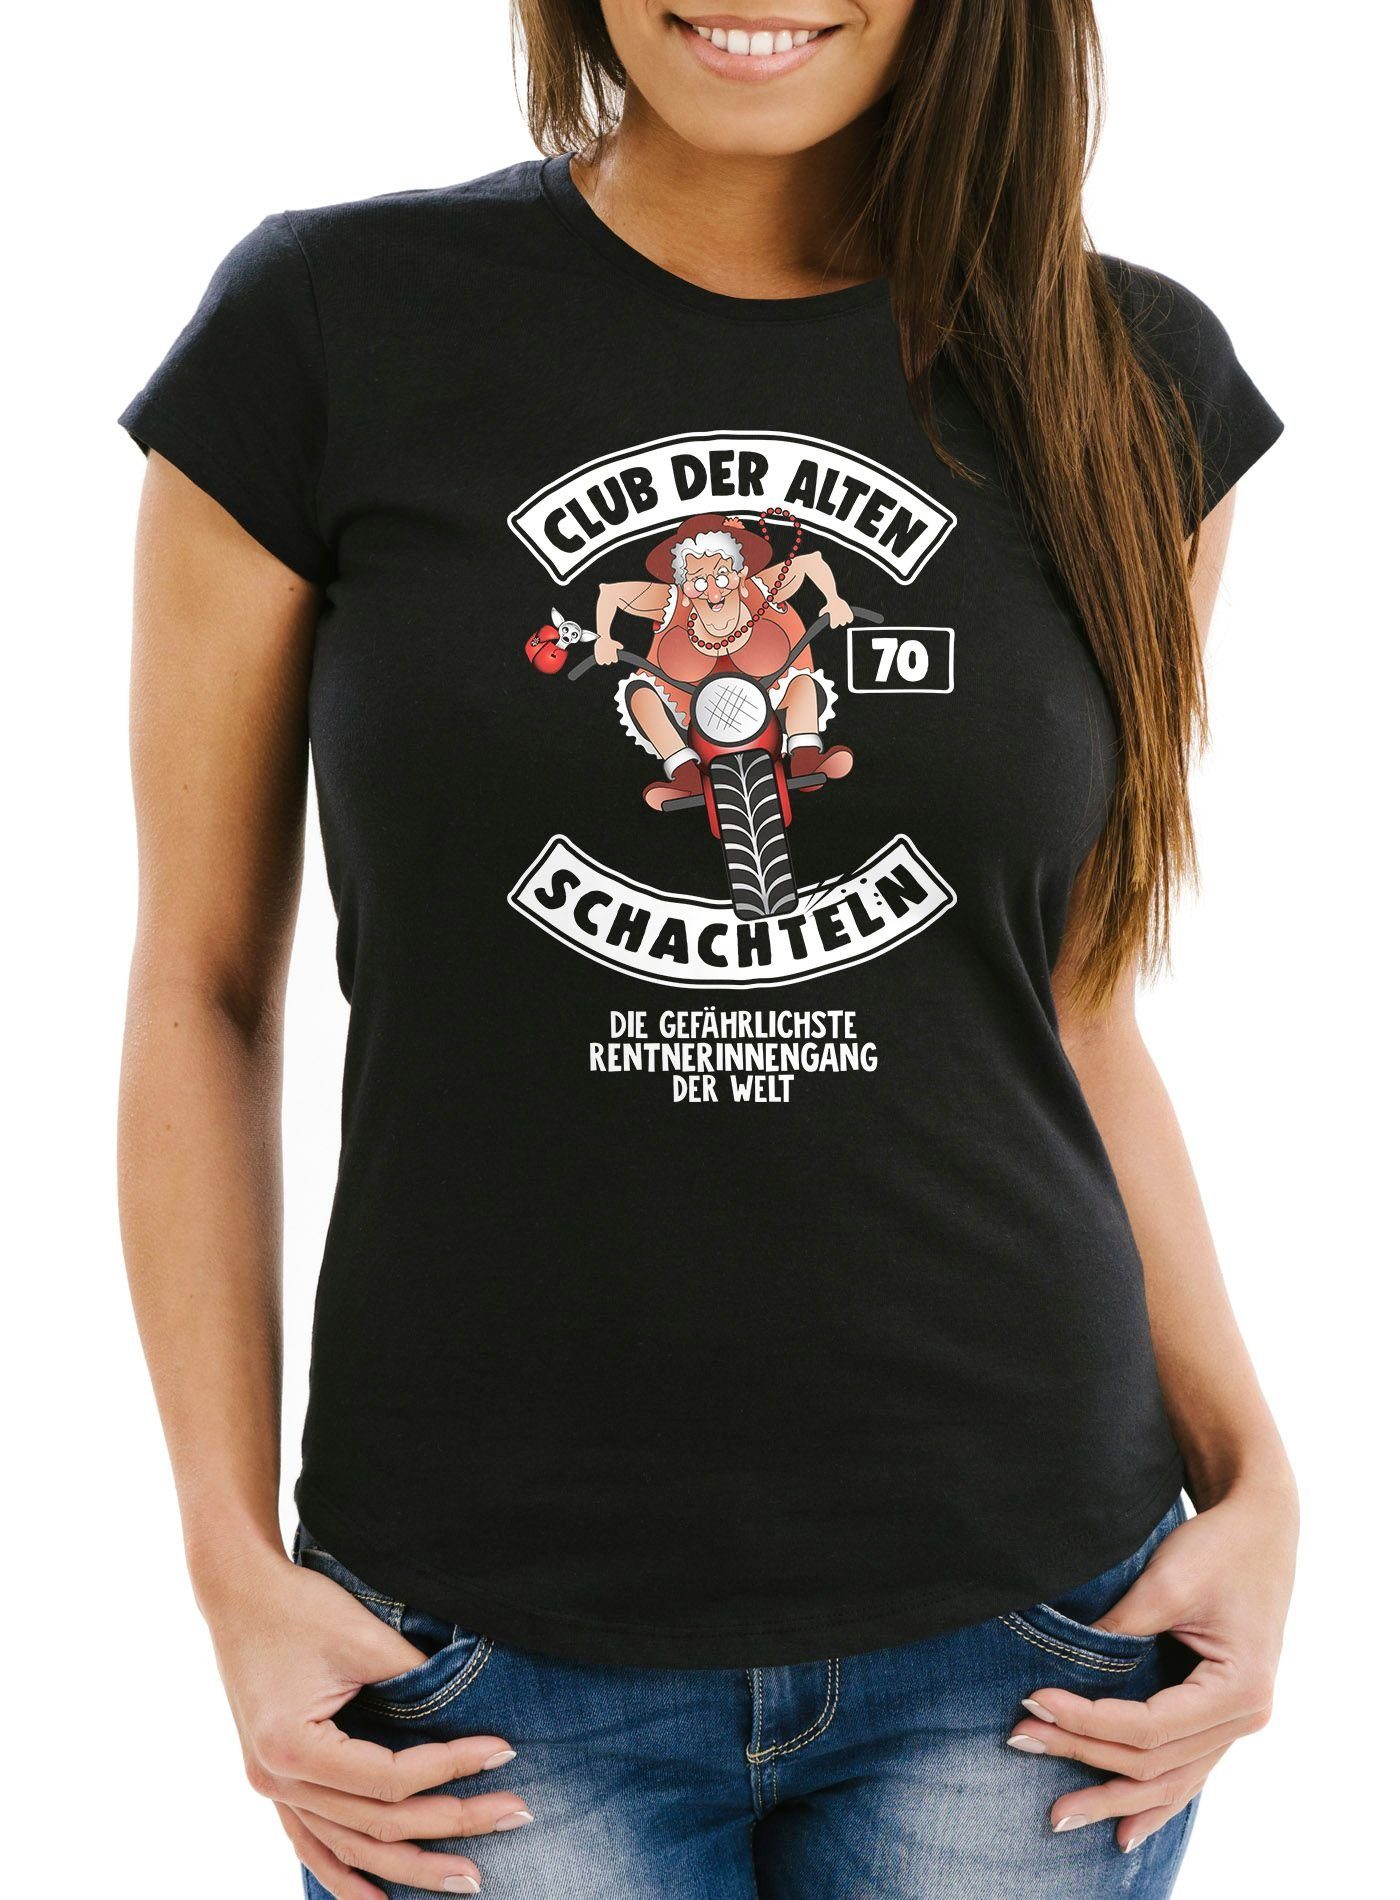 Geschenk alten Damen für 70 Geburtstags-T-Shirt Schachteln Der Runder Frauen ältere Print Fun-Shirt MoonWorks Print-Shirt mit schwarz Club Geburtstag Moonworks®